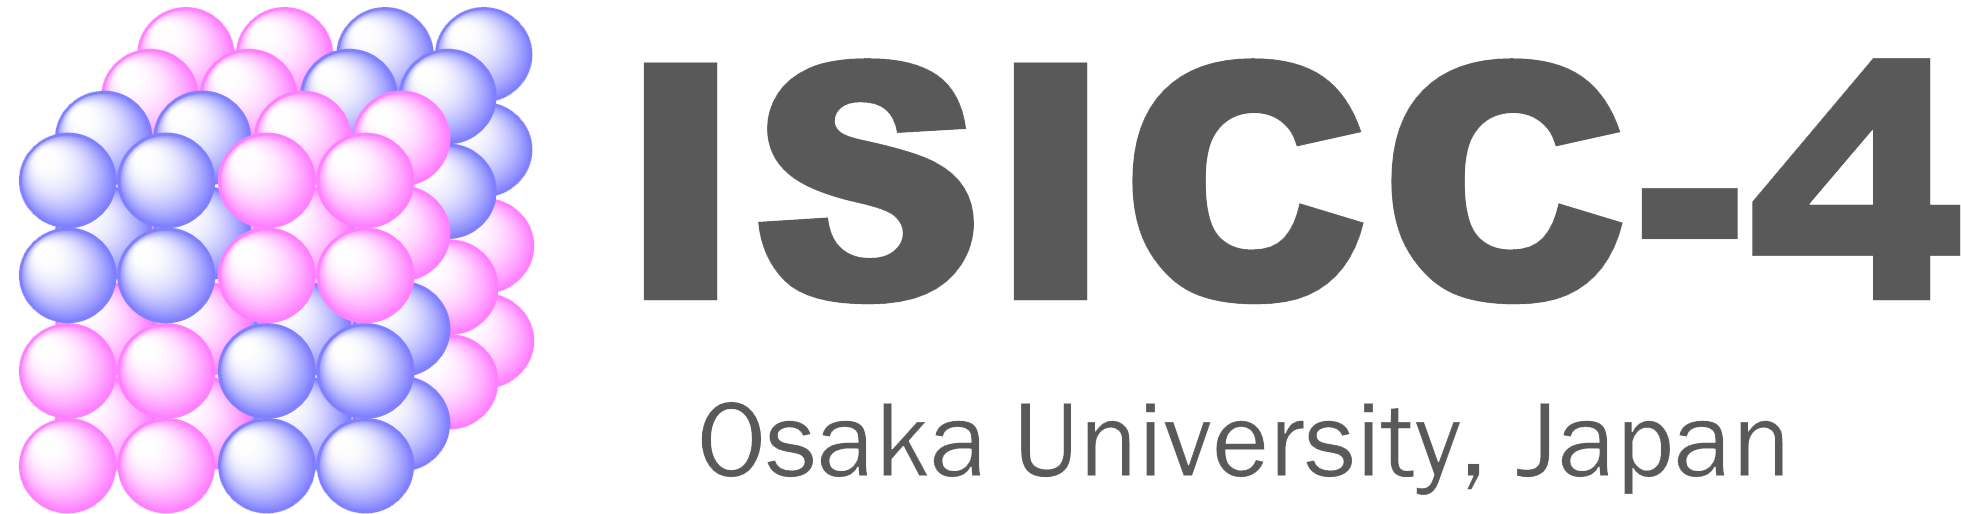 isicc4-logo